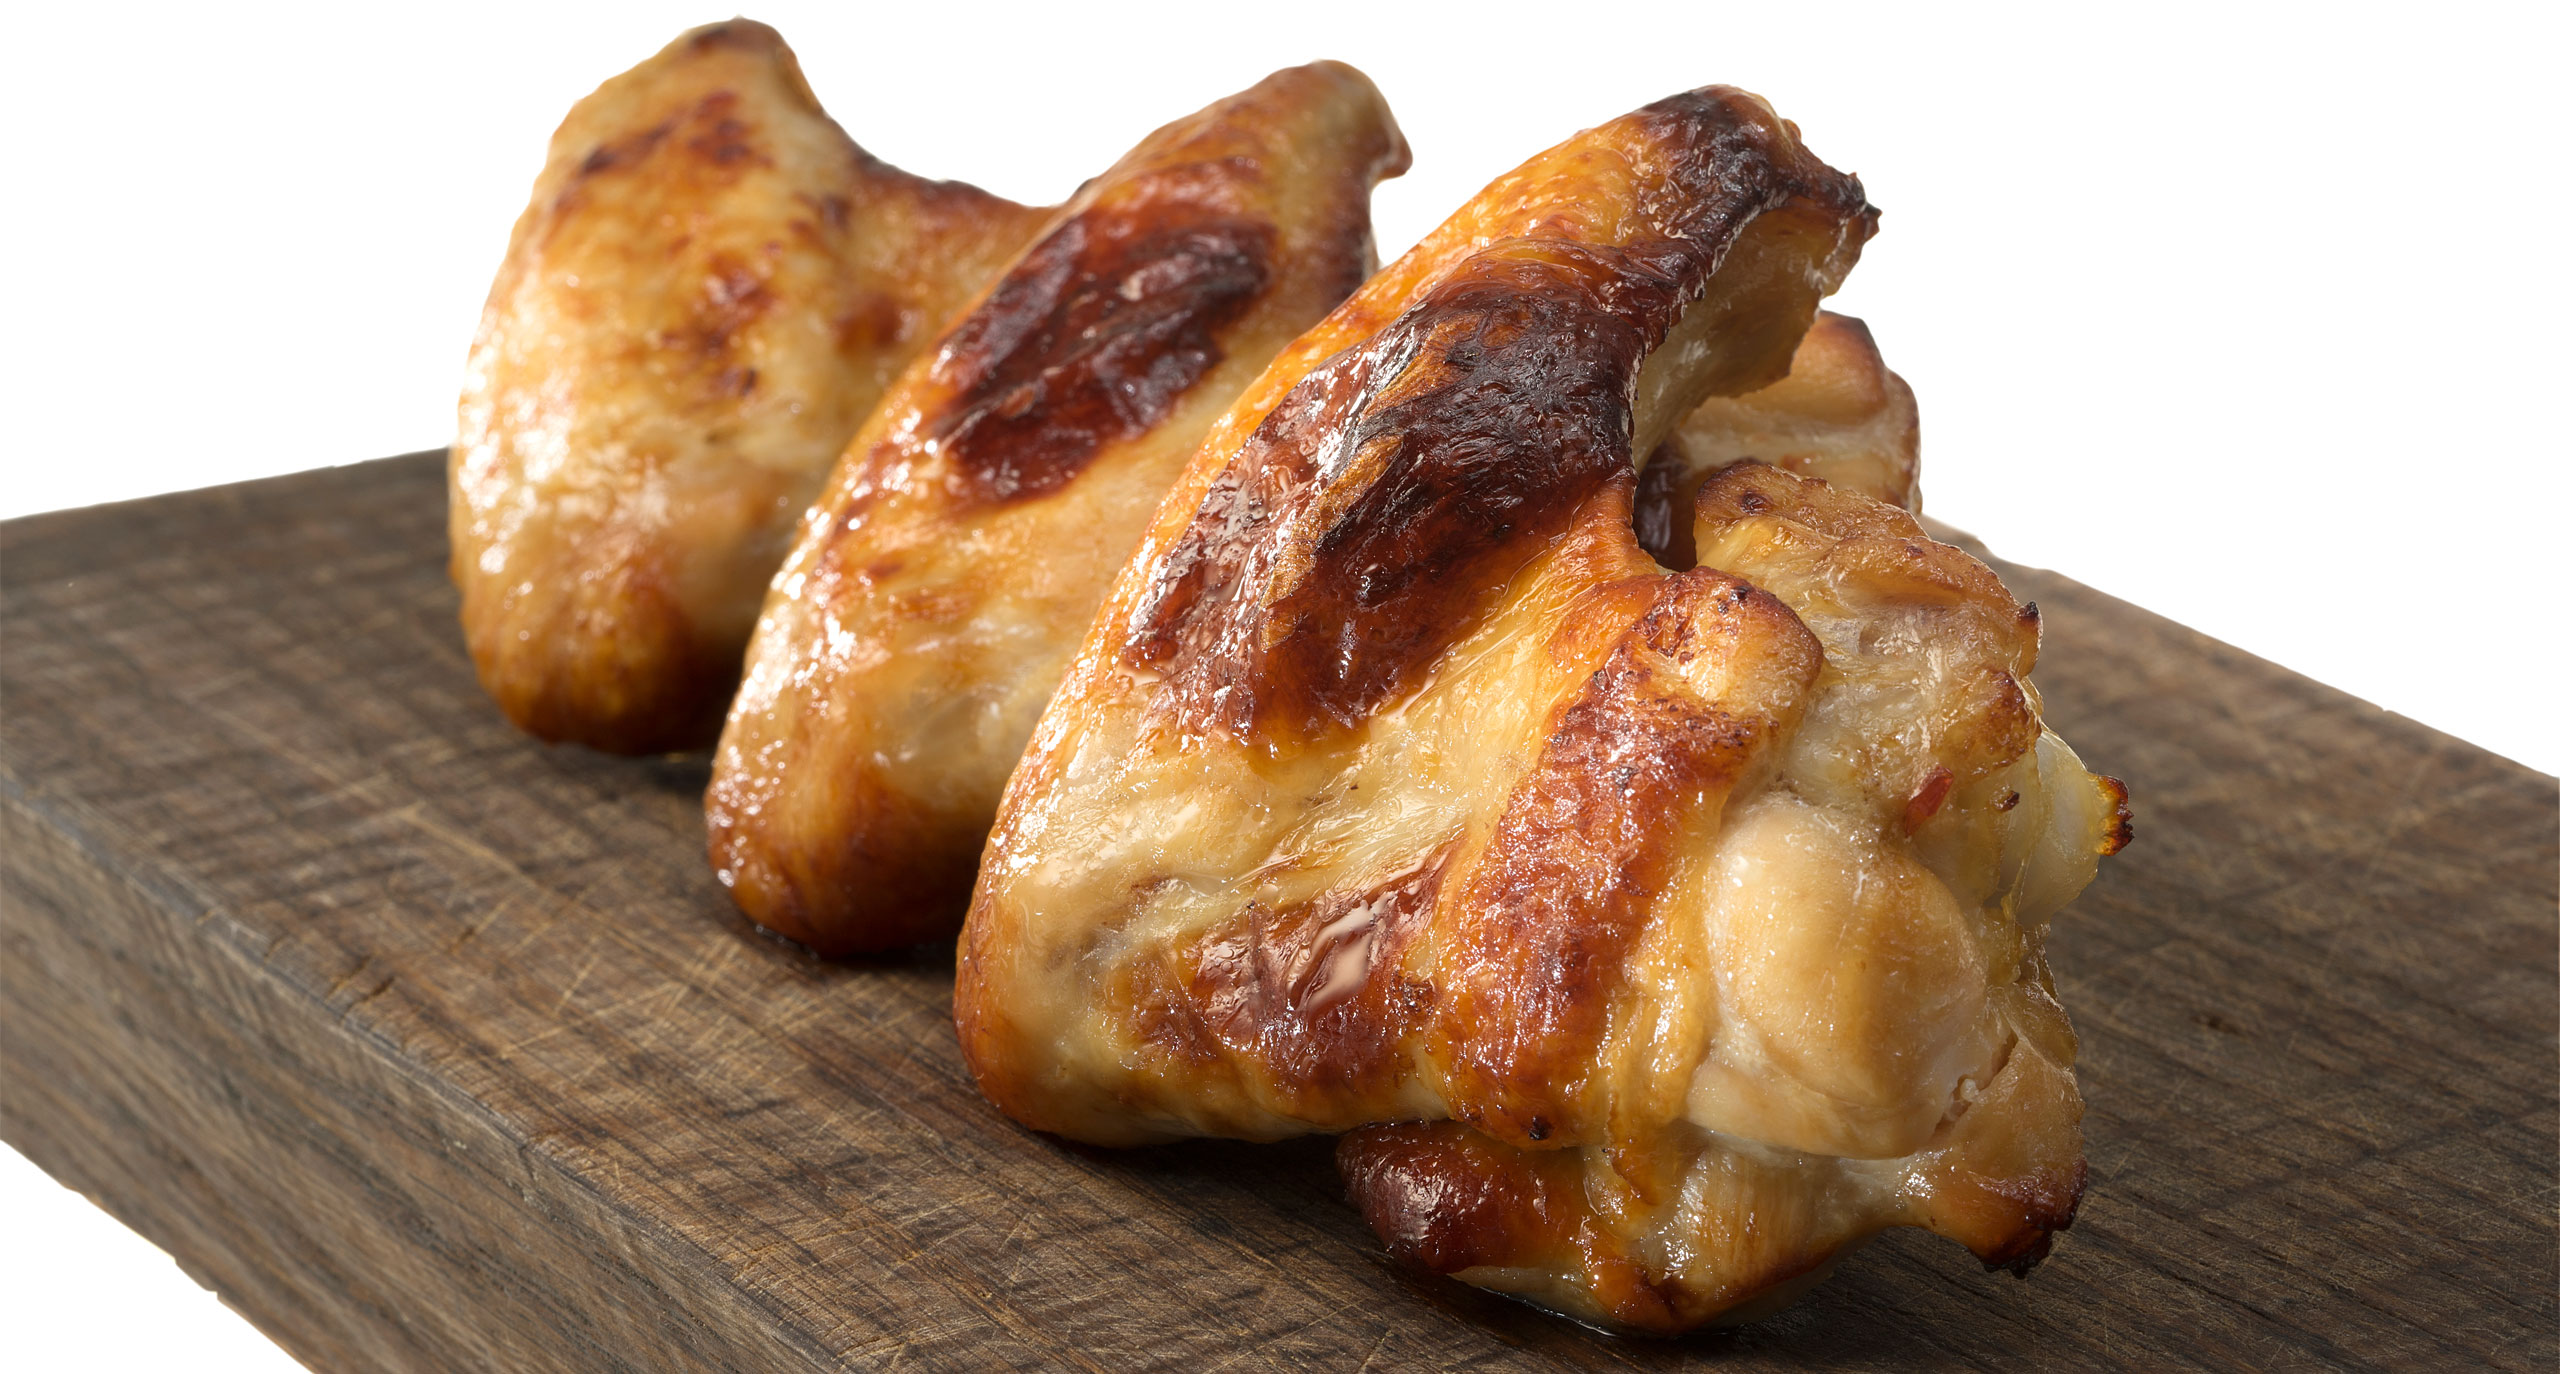 Куриные крылья с овощами в духовке рецепт – Испанская кухня: Основные блюда. «Еда»